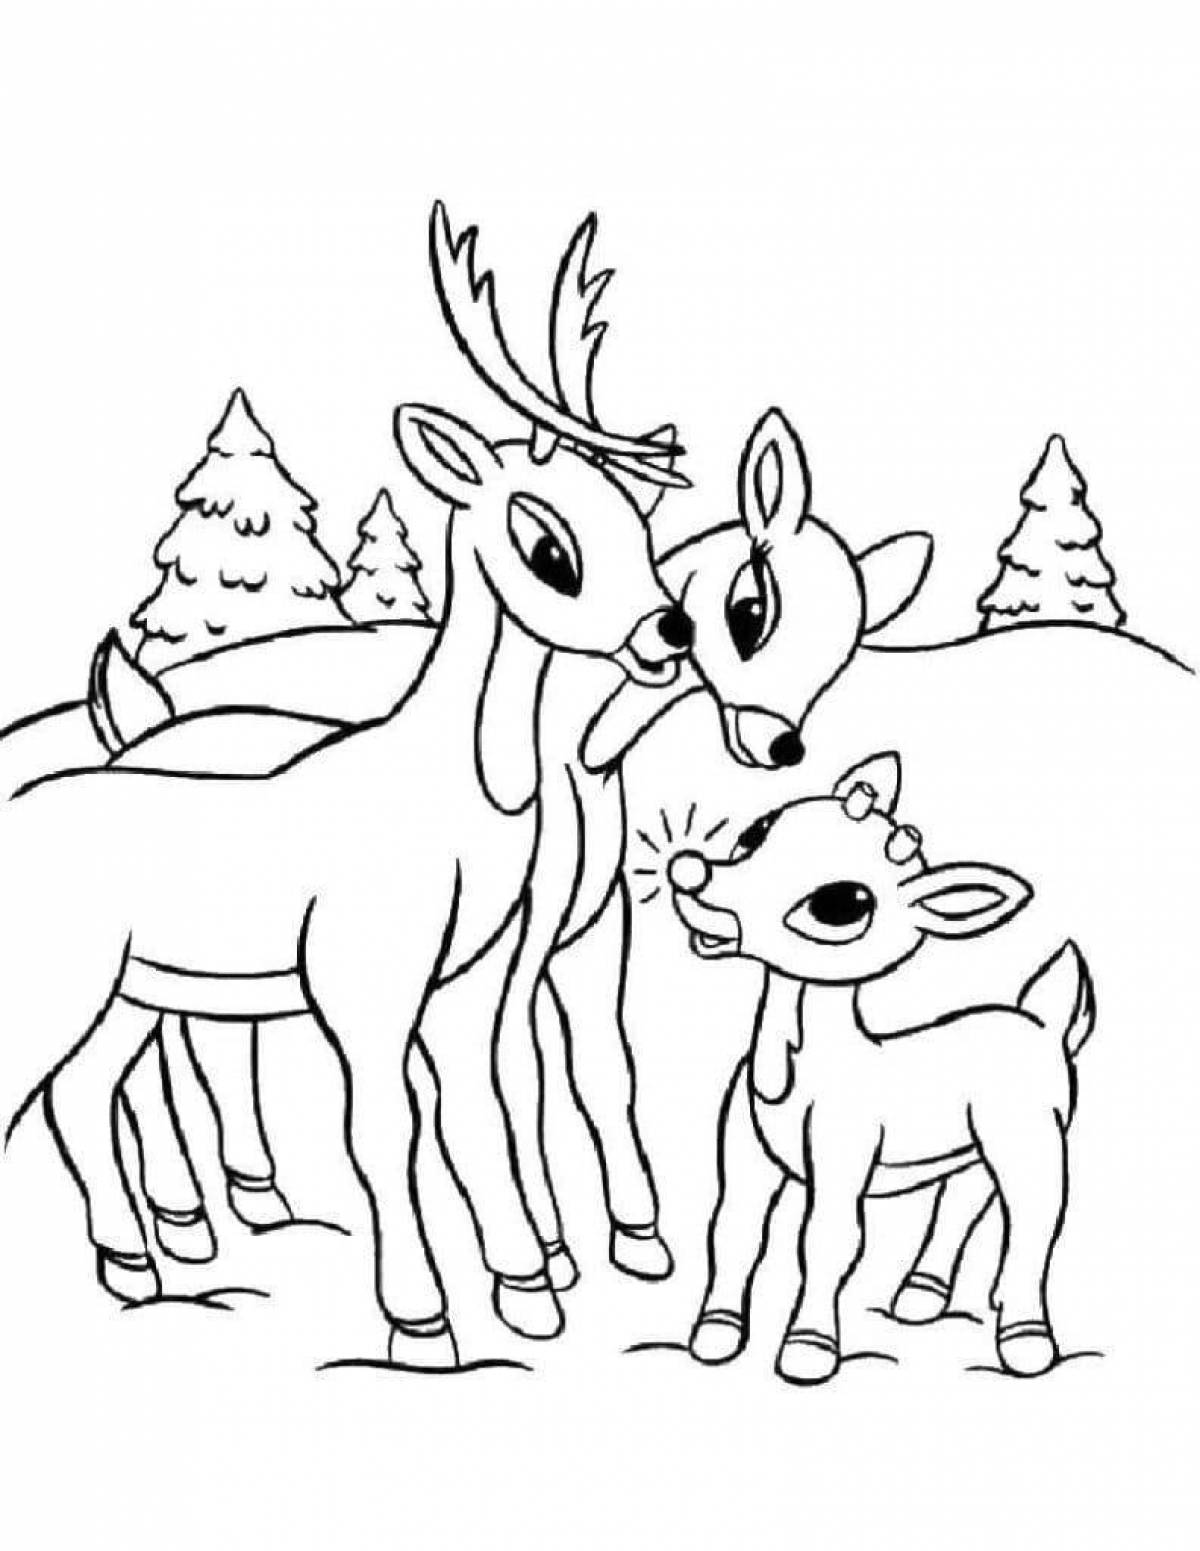 Сказочная раскраска олень для детей 3-4 лет